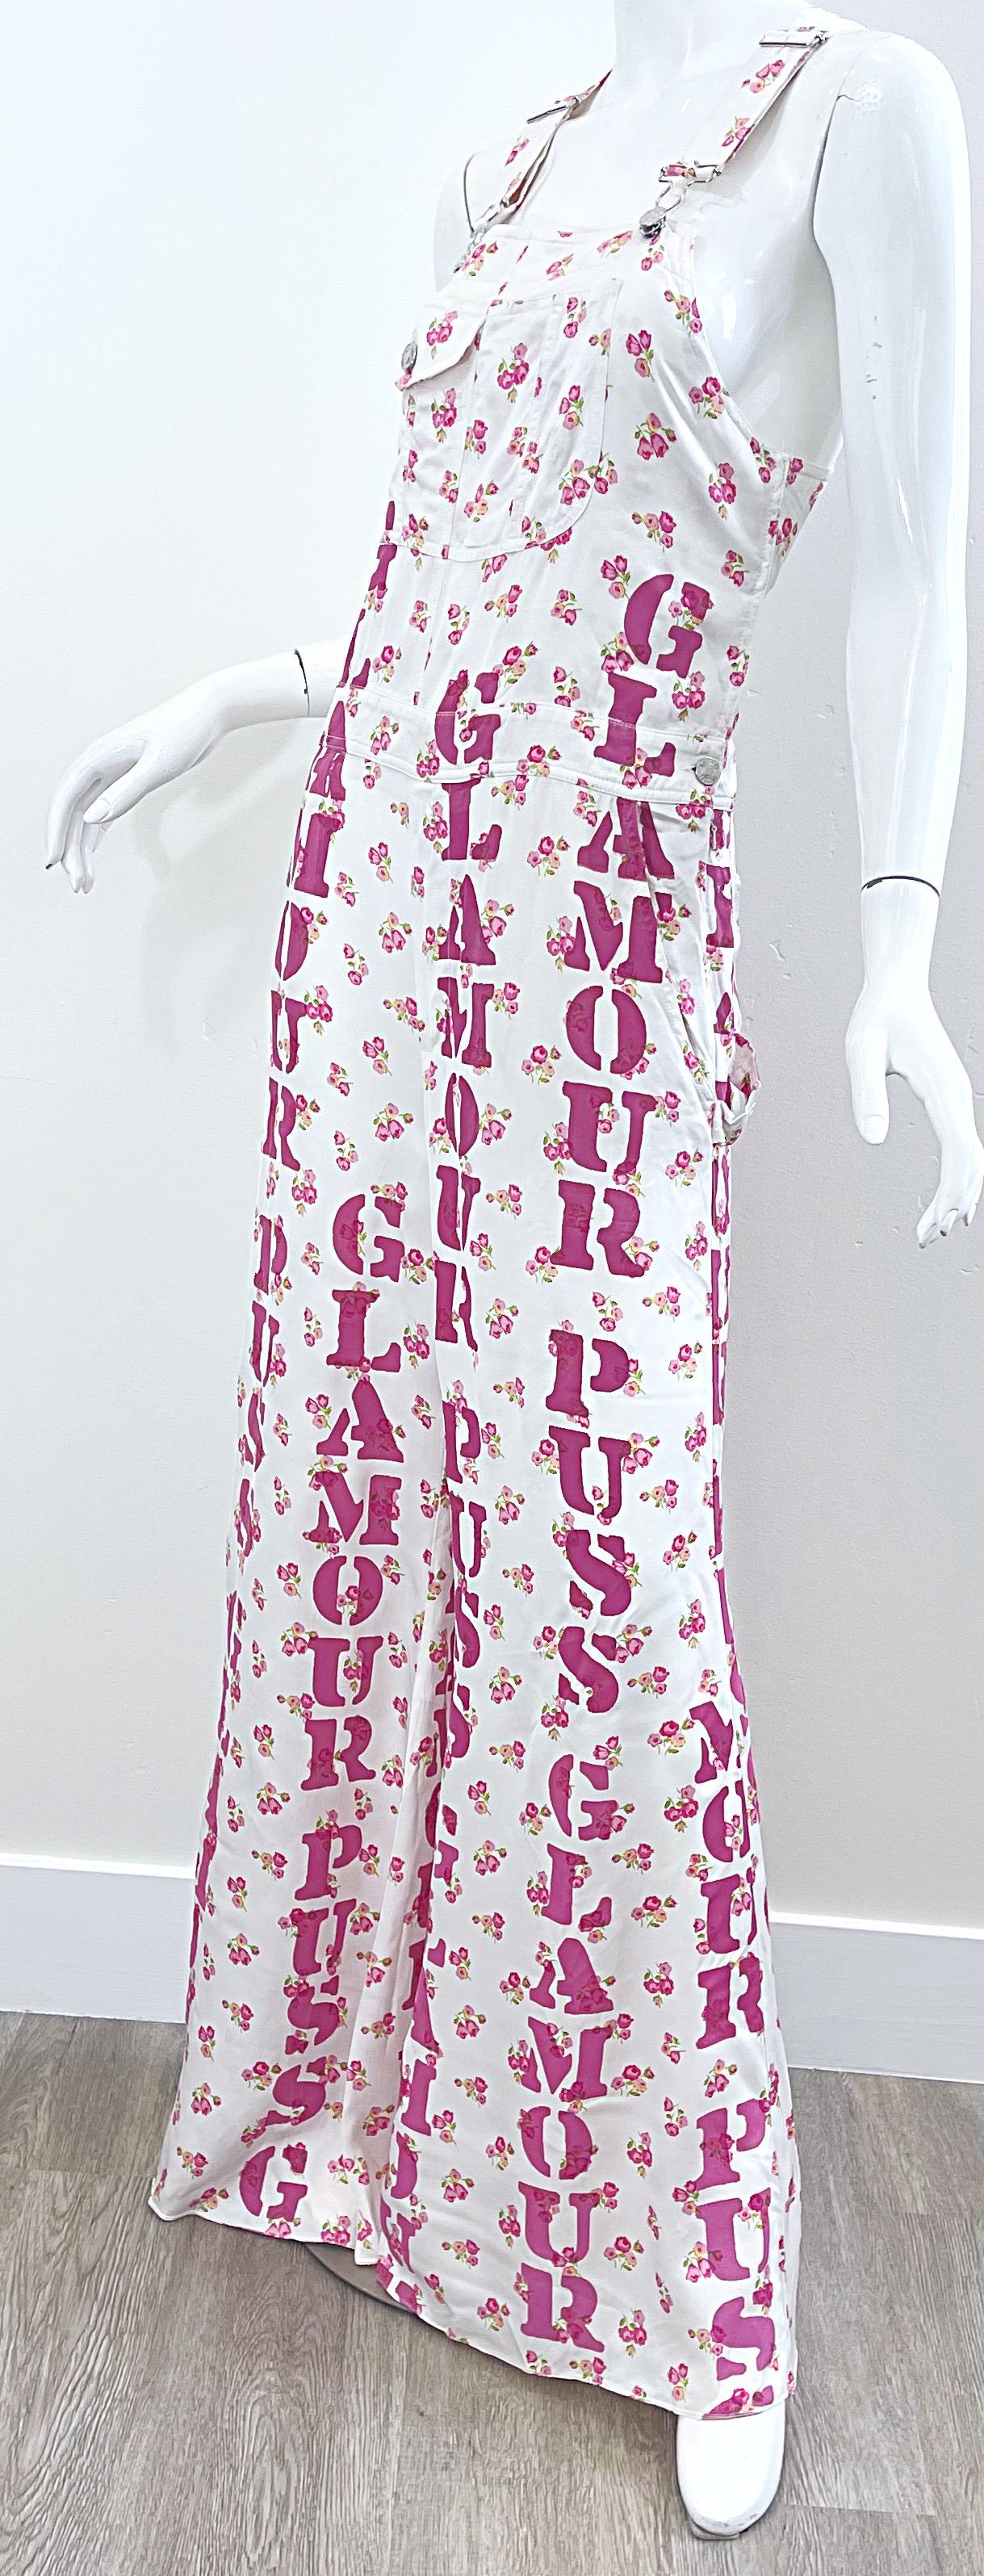 Moschino Couture Resort 2020 Größe 8 Glamour Puss Overalls mit Blumendruck in Übergröße 8